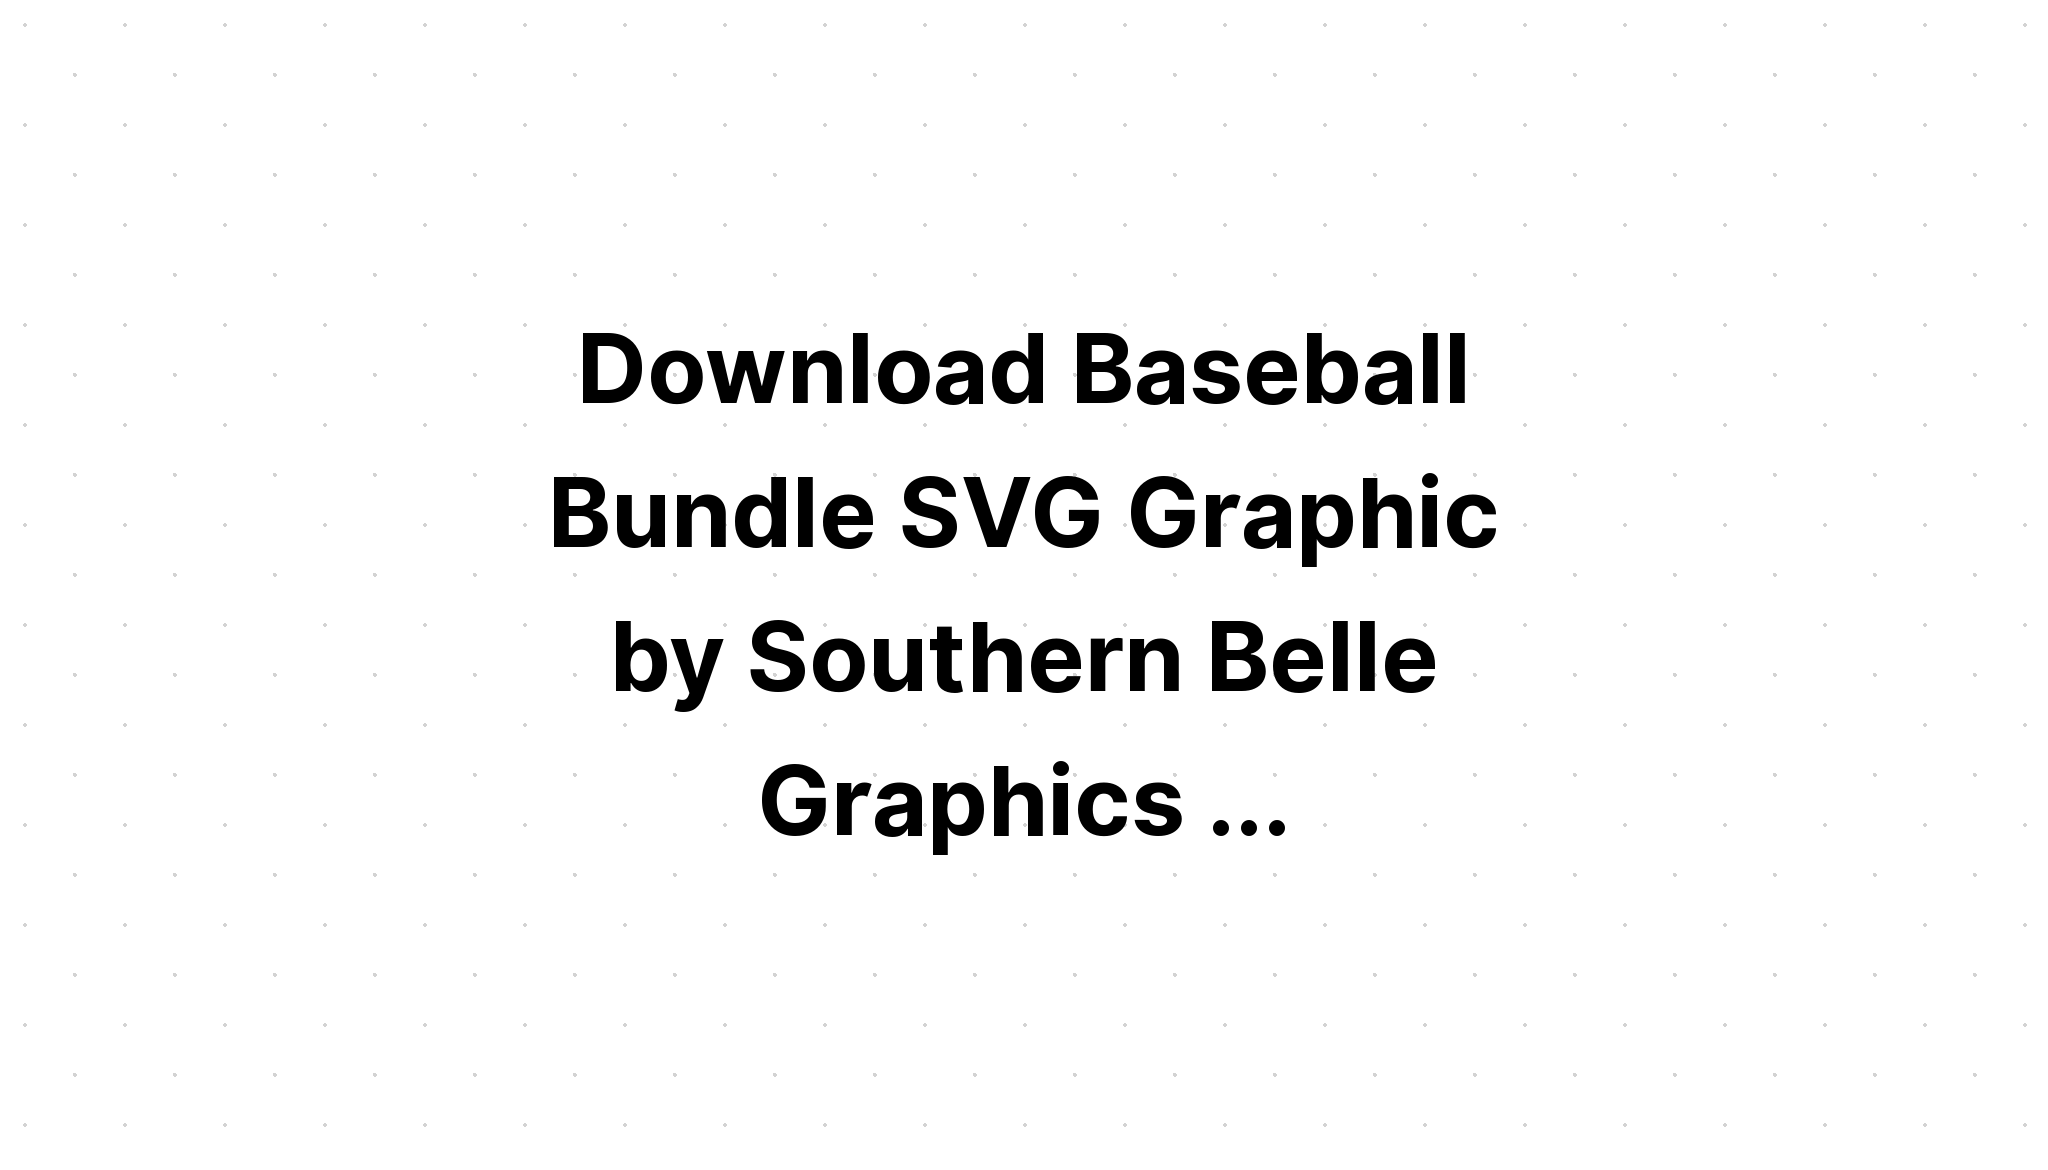 Download 34 Baseball Quotes Bundle Svg Files SVG File